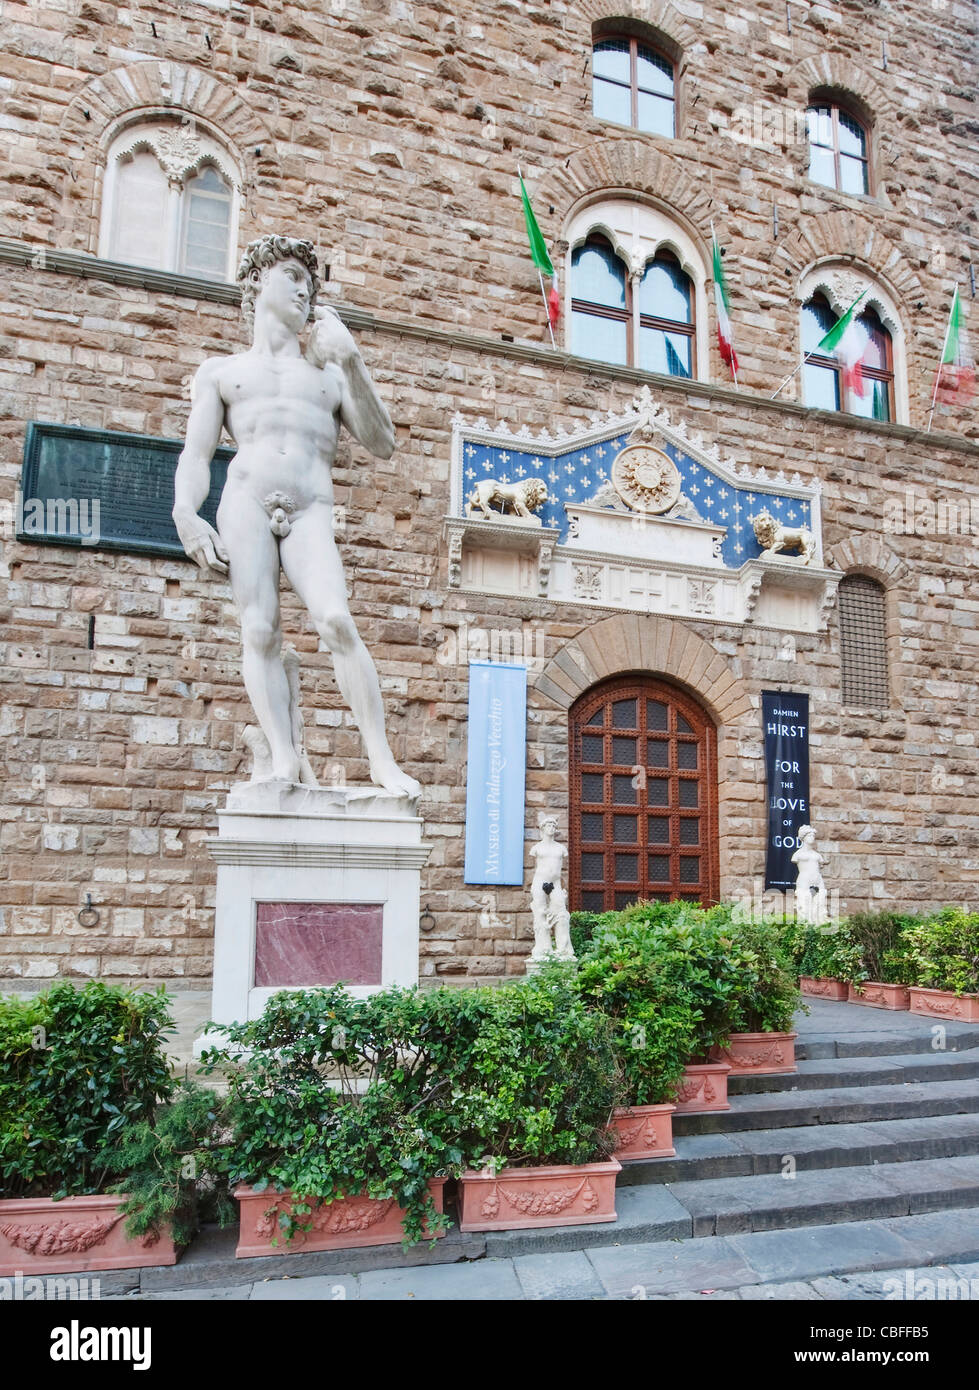 Europa, Italien, Toskana, Florenz, Palazzo Vecchio Eingang mit Kopie der Statue des David von Michelangelo Stockfoto